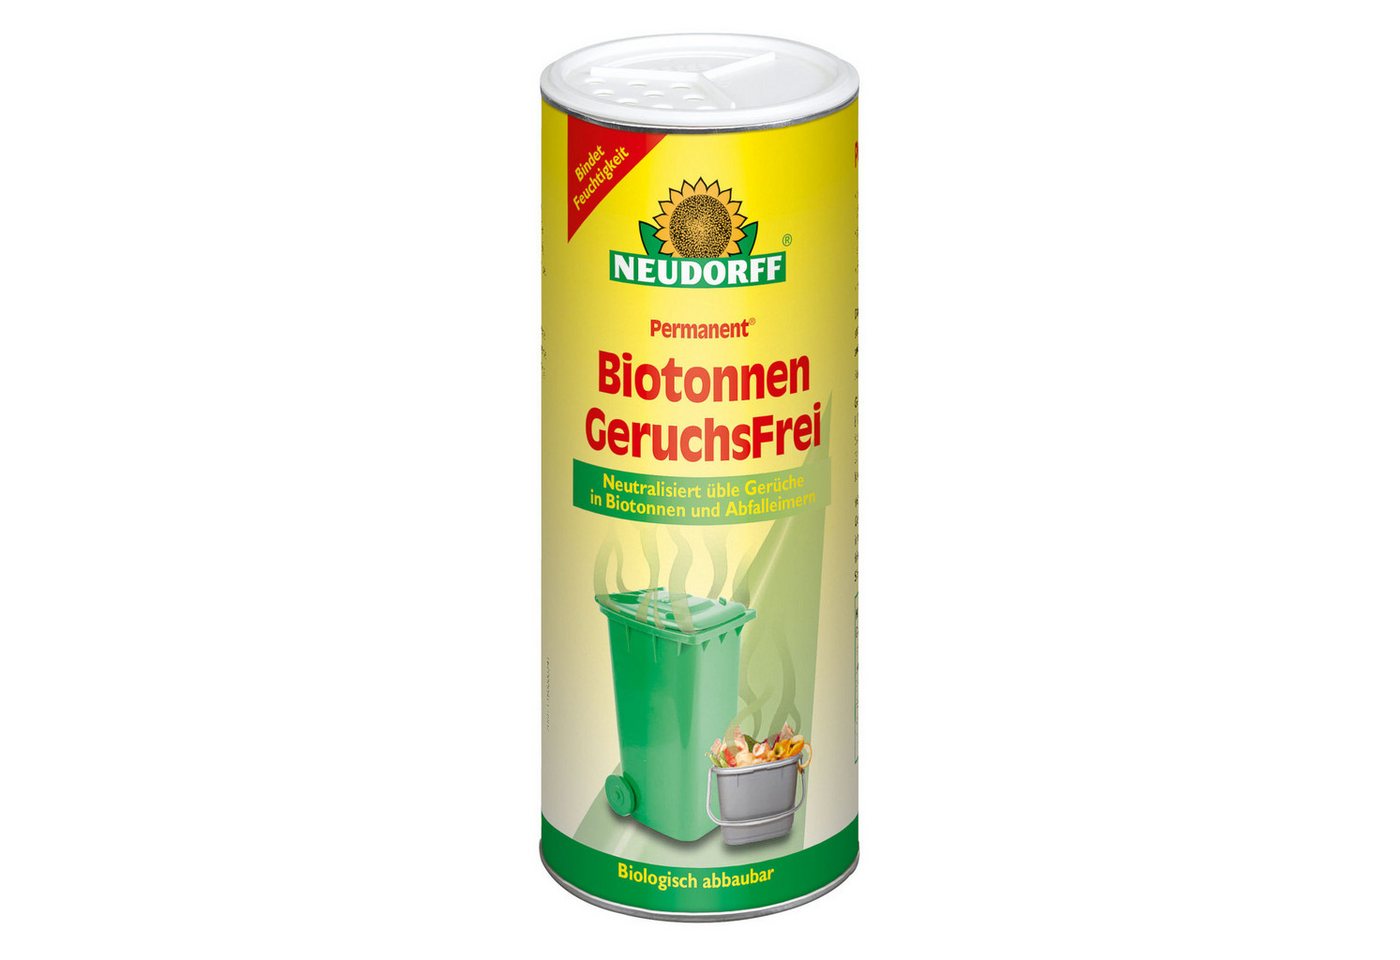 Neudorff Biotonnenpulver Permanent Biotonnen Geruchsfrei - 500 g von Neudorff